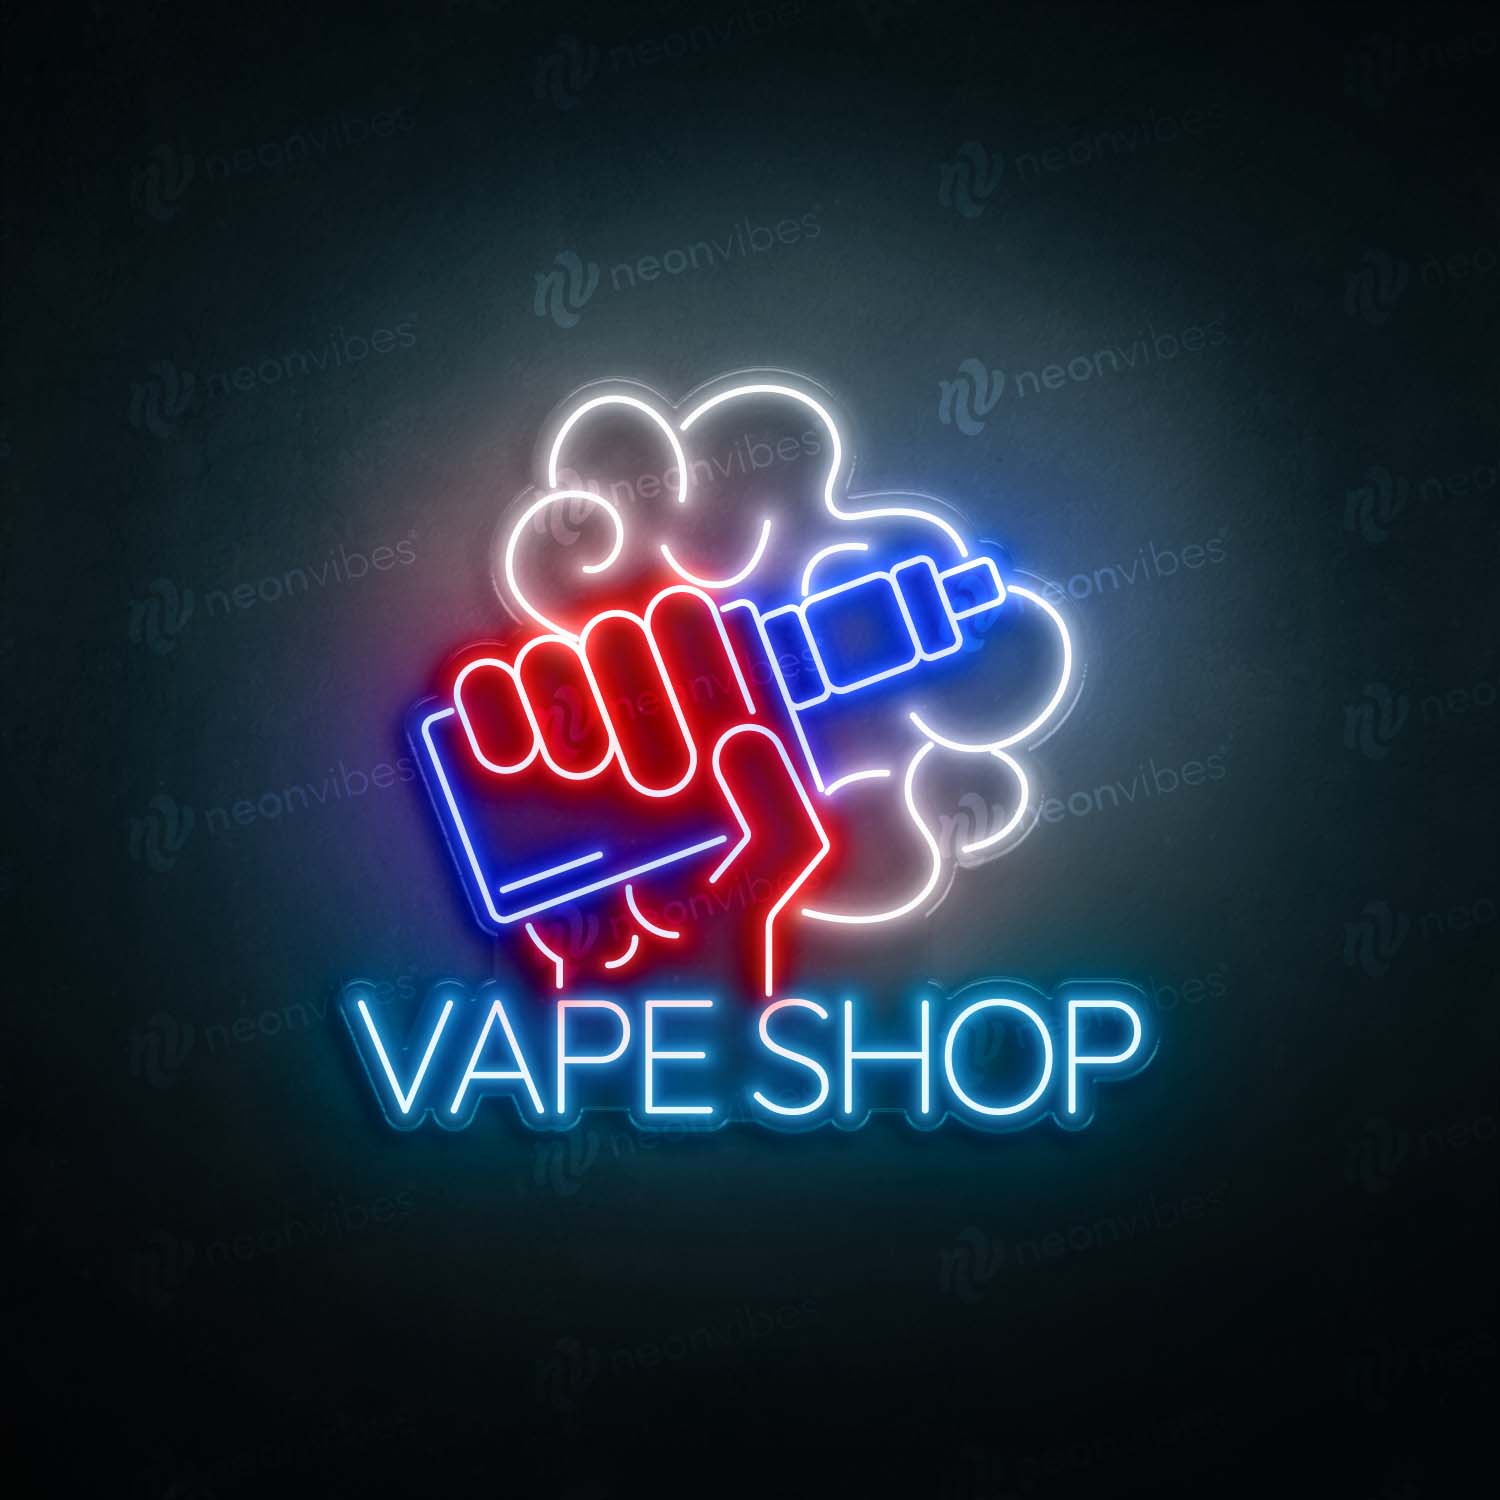 Vape Shop V3 neon sign